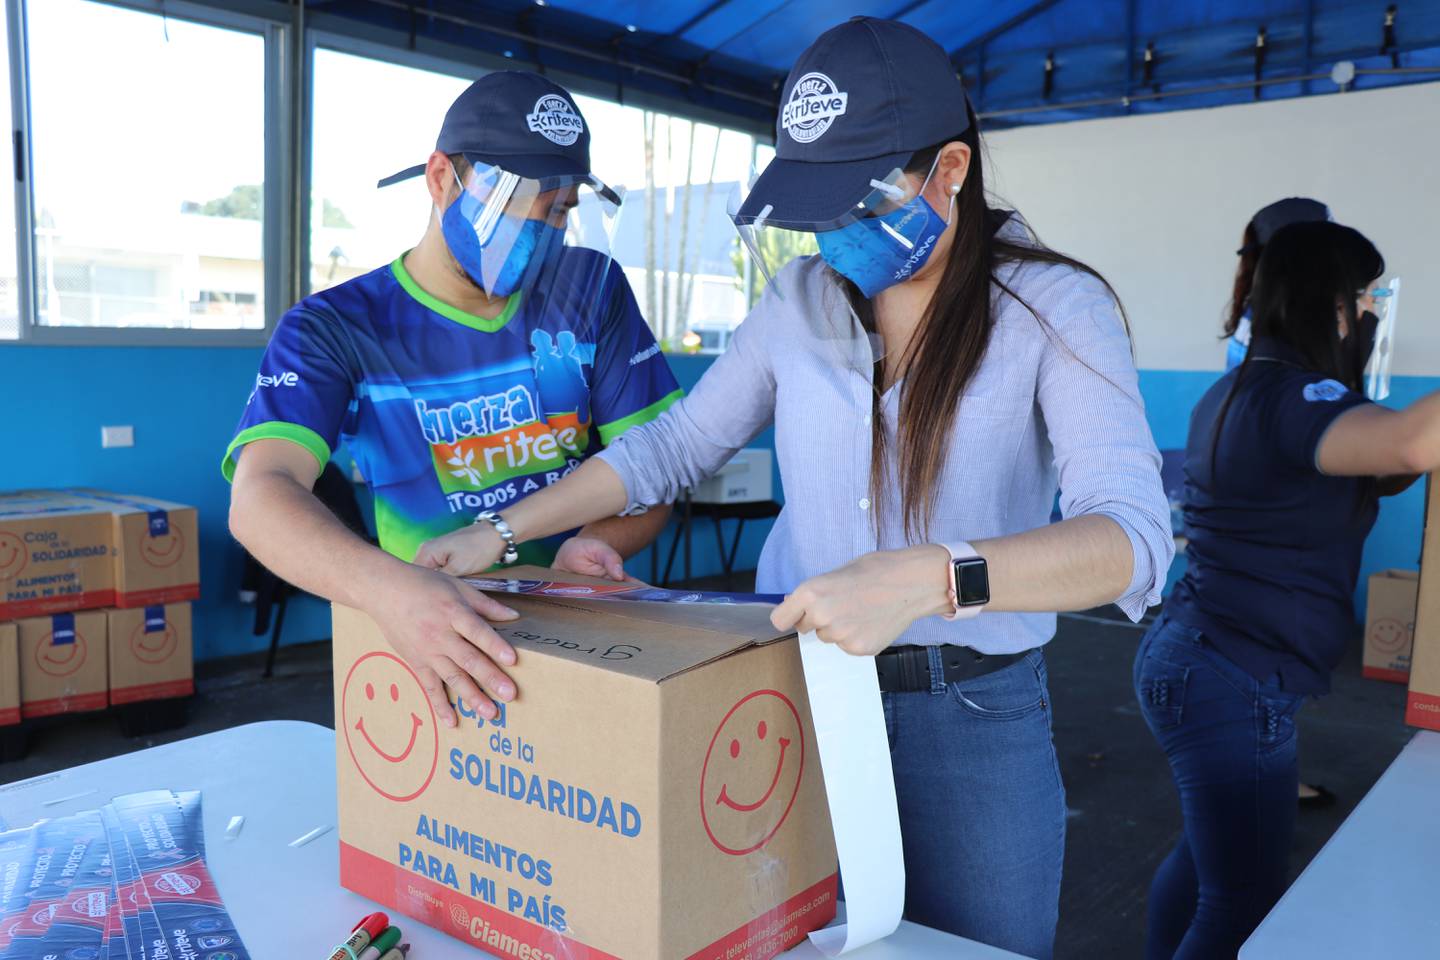 Cien cajas llenas de alimentos,, como gesto de solidaridad fueron preparadas esta semana por los voluntarios de Riteve, como parte del denominado “Proyecto Solidaridad .2” que desarrolla la empresa Riteve y la Sociedad de Socorro Mutuo.